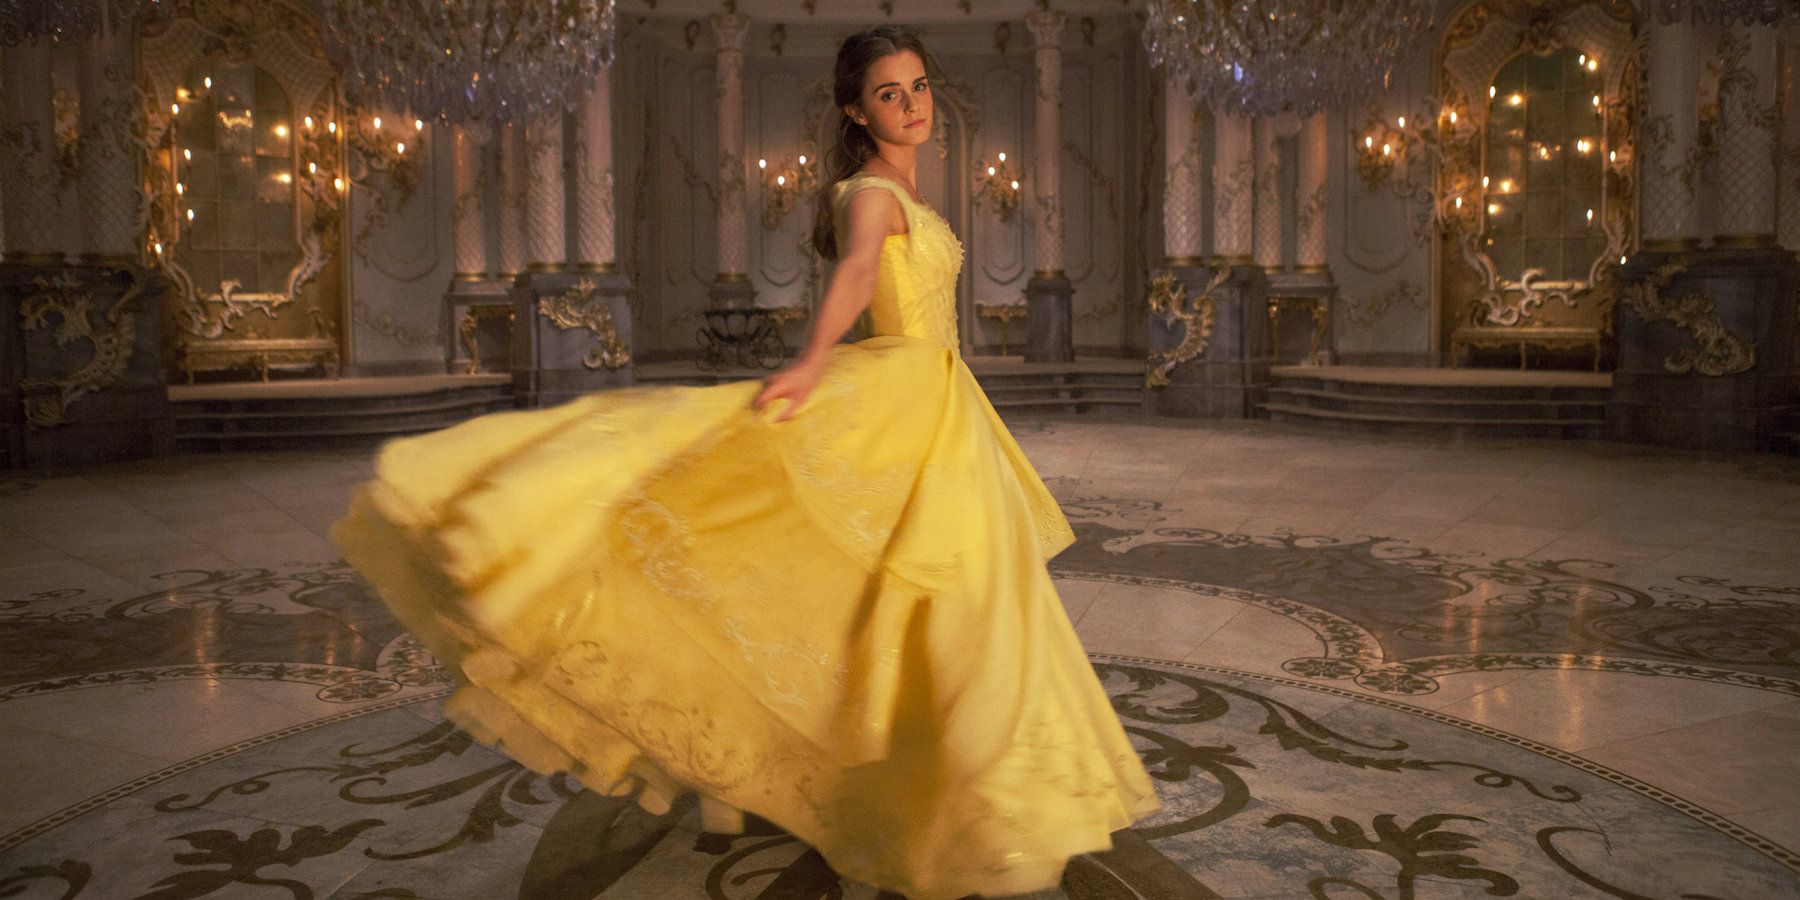 Belle twirls in her yellow dress